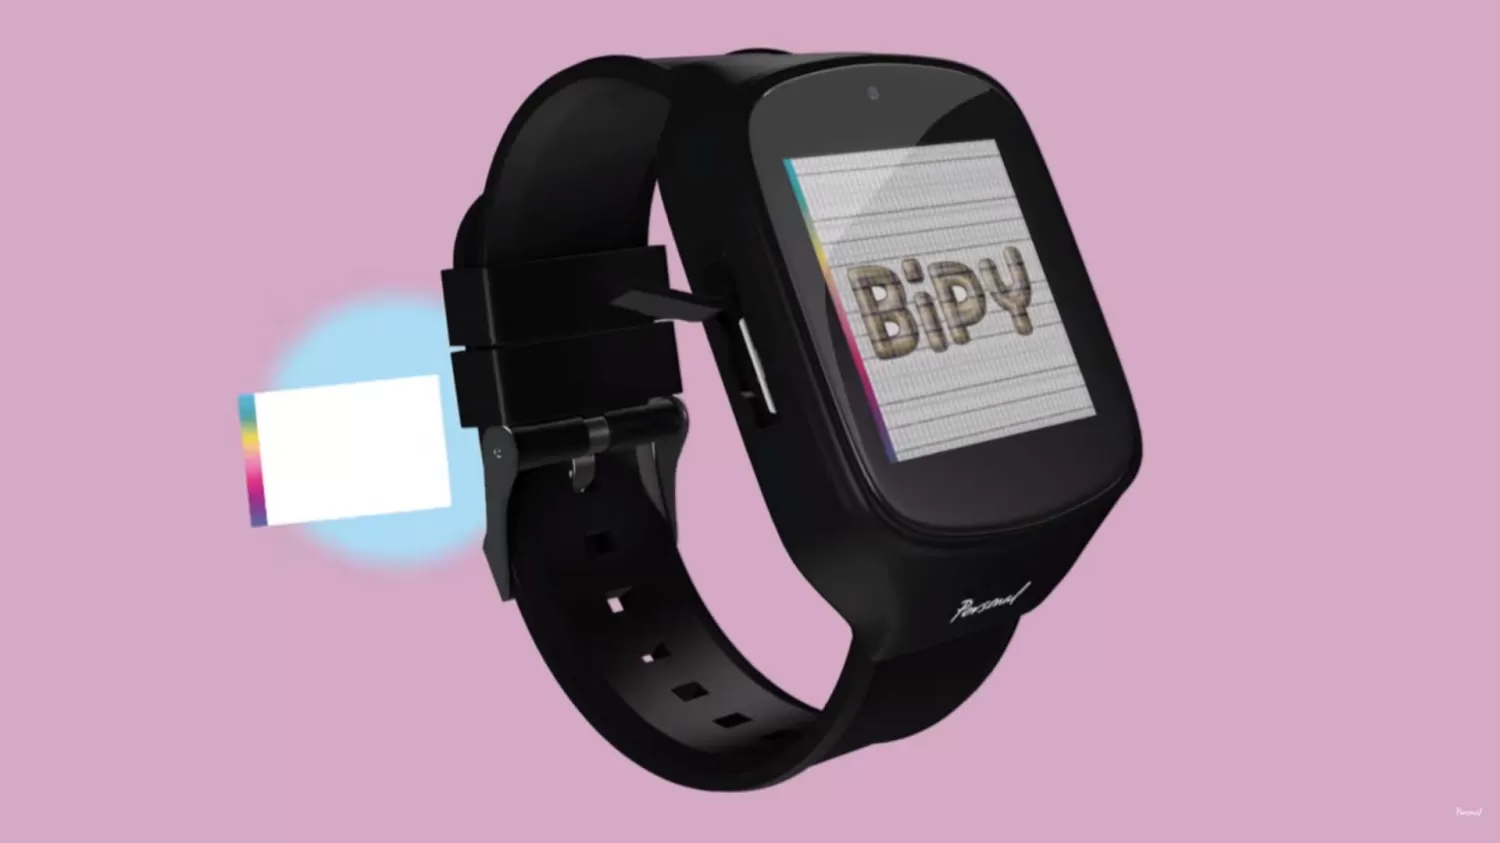 Bipy, el reloj inteligente para gente mayor. (Captura del video)